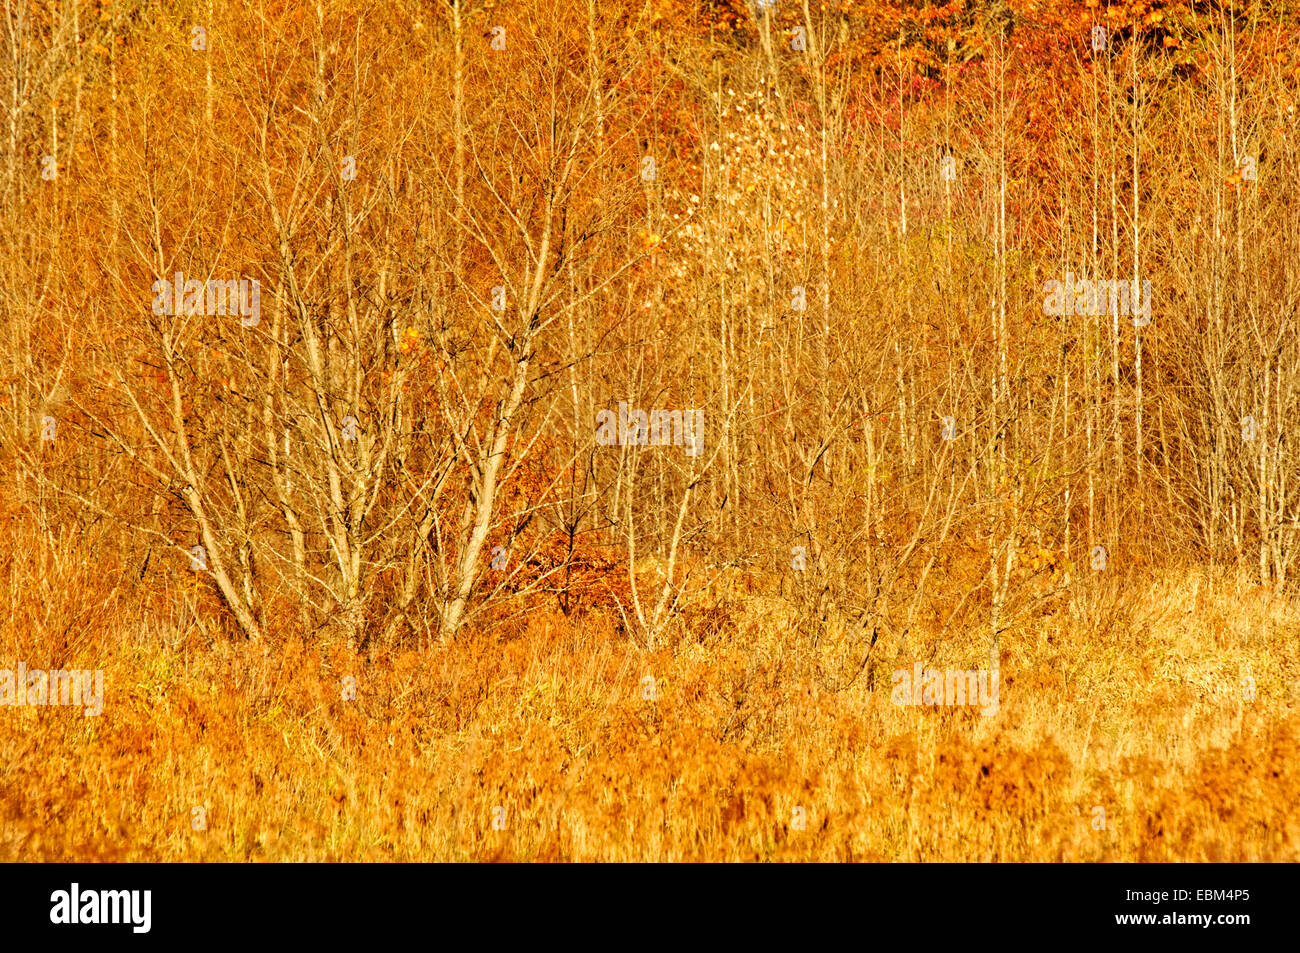 Ligne d'arbres en automne avec de l'herbe jaune, dans le comté de Monroe, dans l'Indiana près de Bloomington, accueil de l'Université de l'Indiana. Banque D'Images